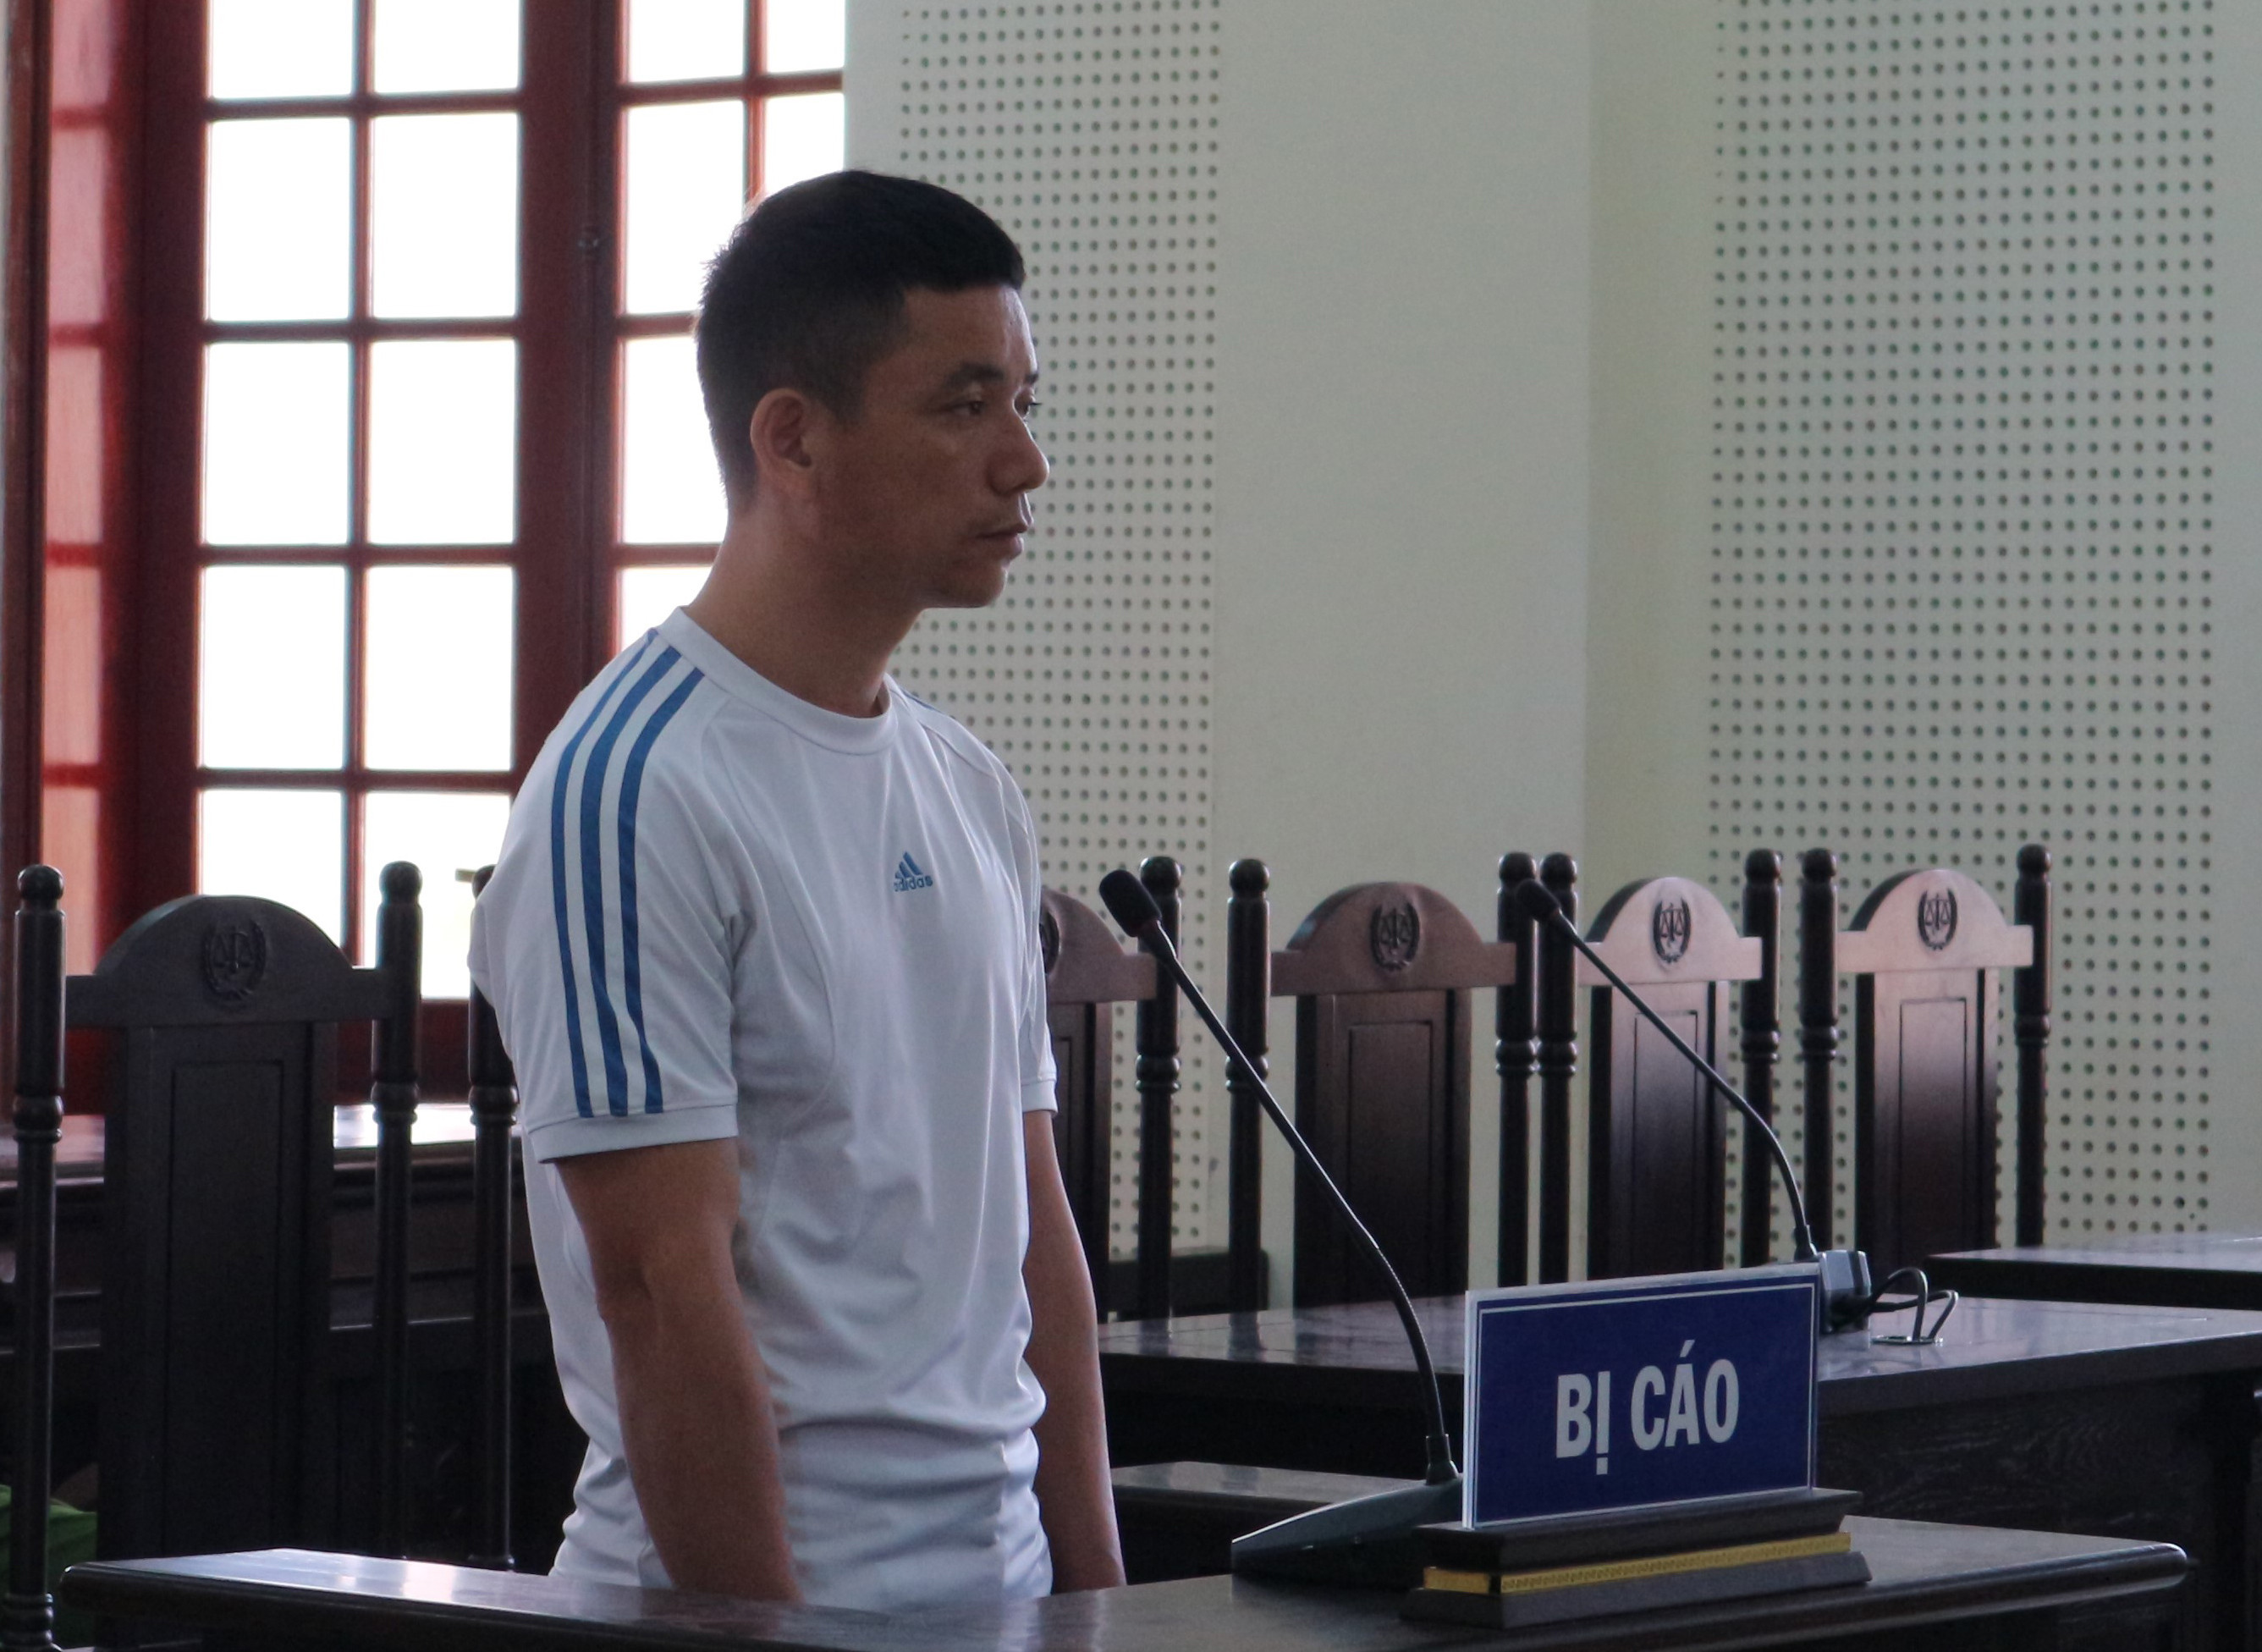 Bị cáo Lê Văn Dương tại phiên tòa. Ảnh: Trần Vũ